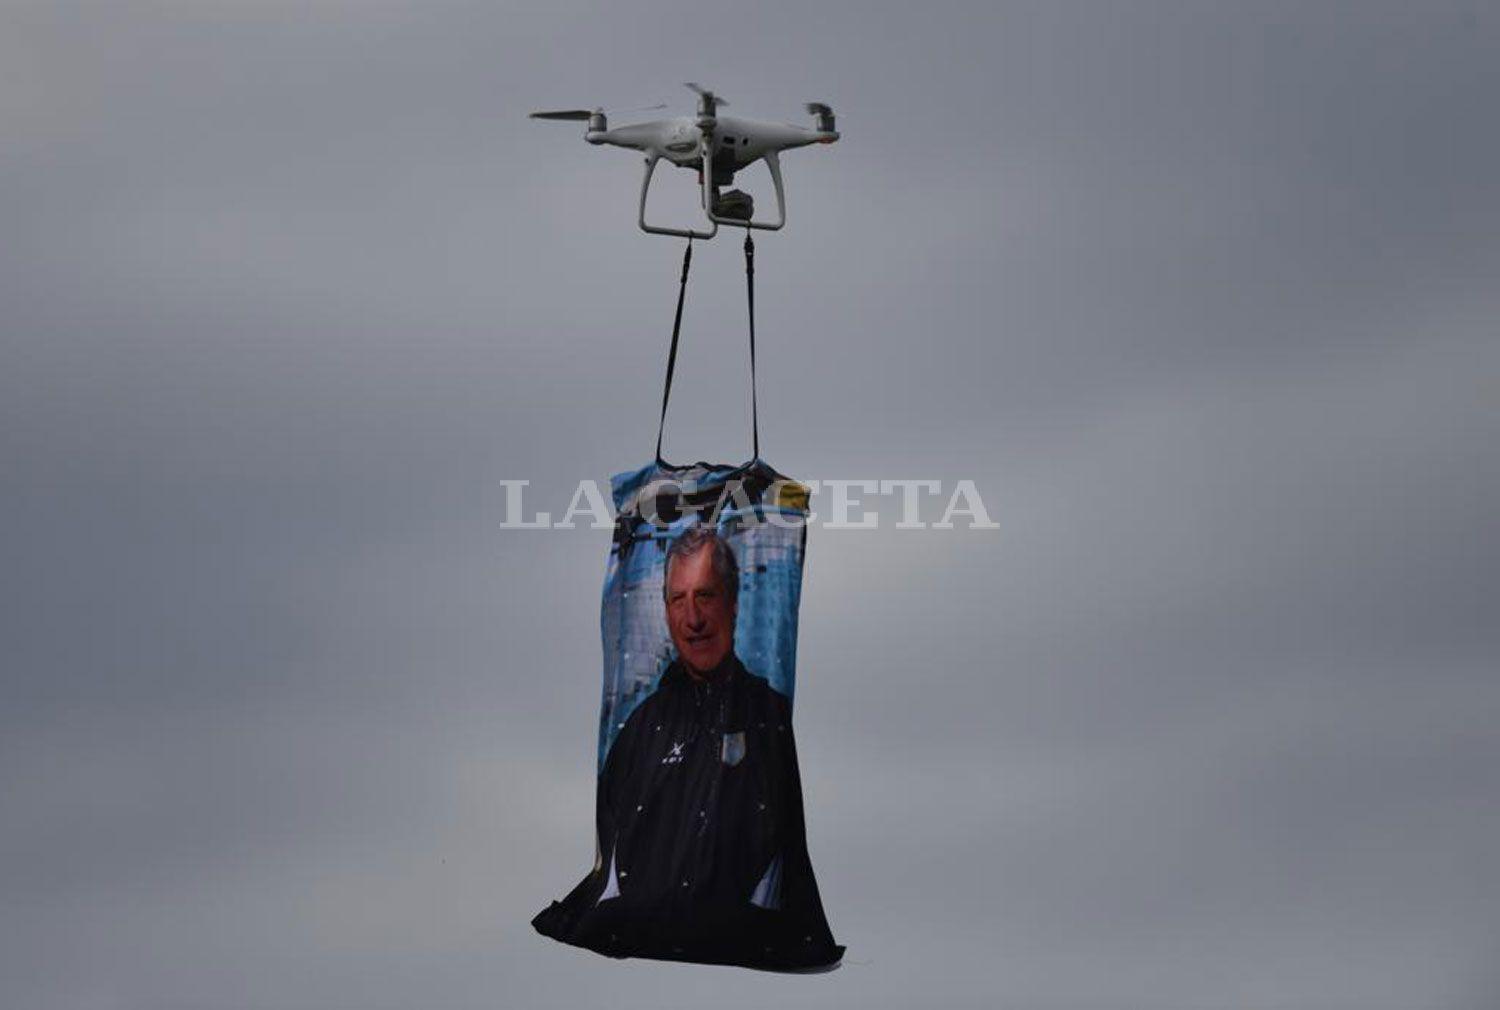 RECUERDO. Un drone recorrió el estadio con la imagen de Rivoira. LA GACETA JUAN PABLO SÁNCHEZ NOLI